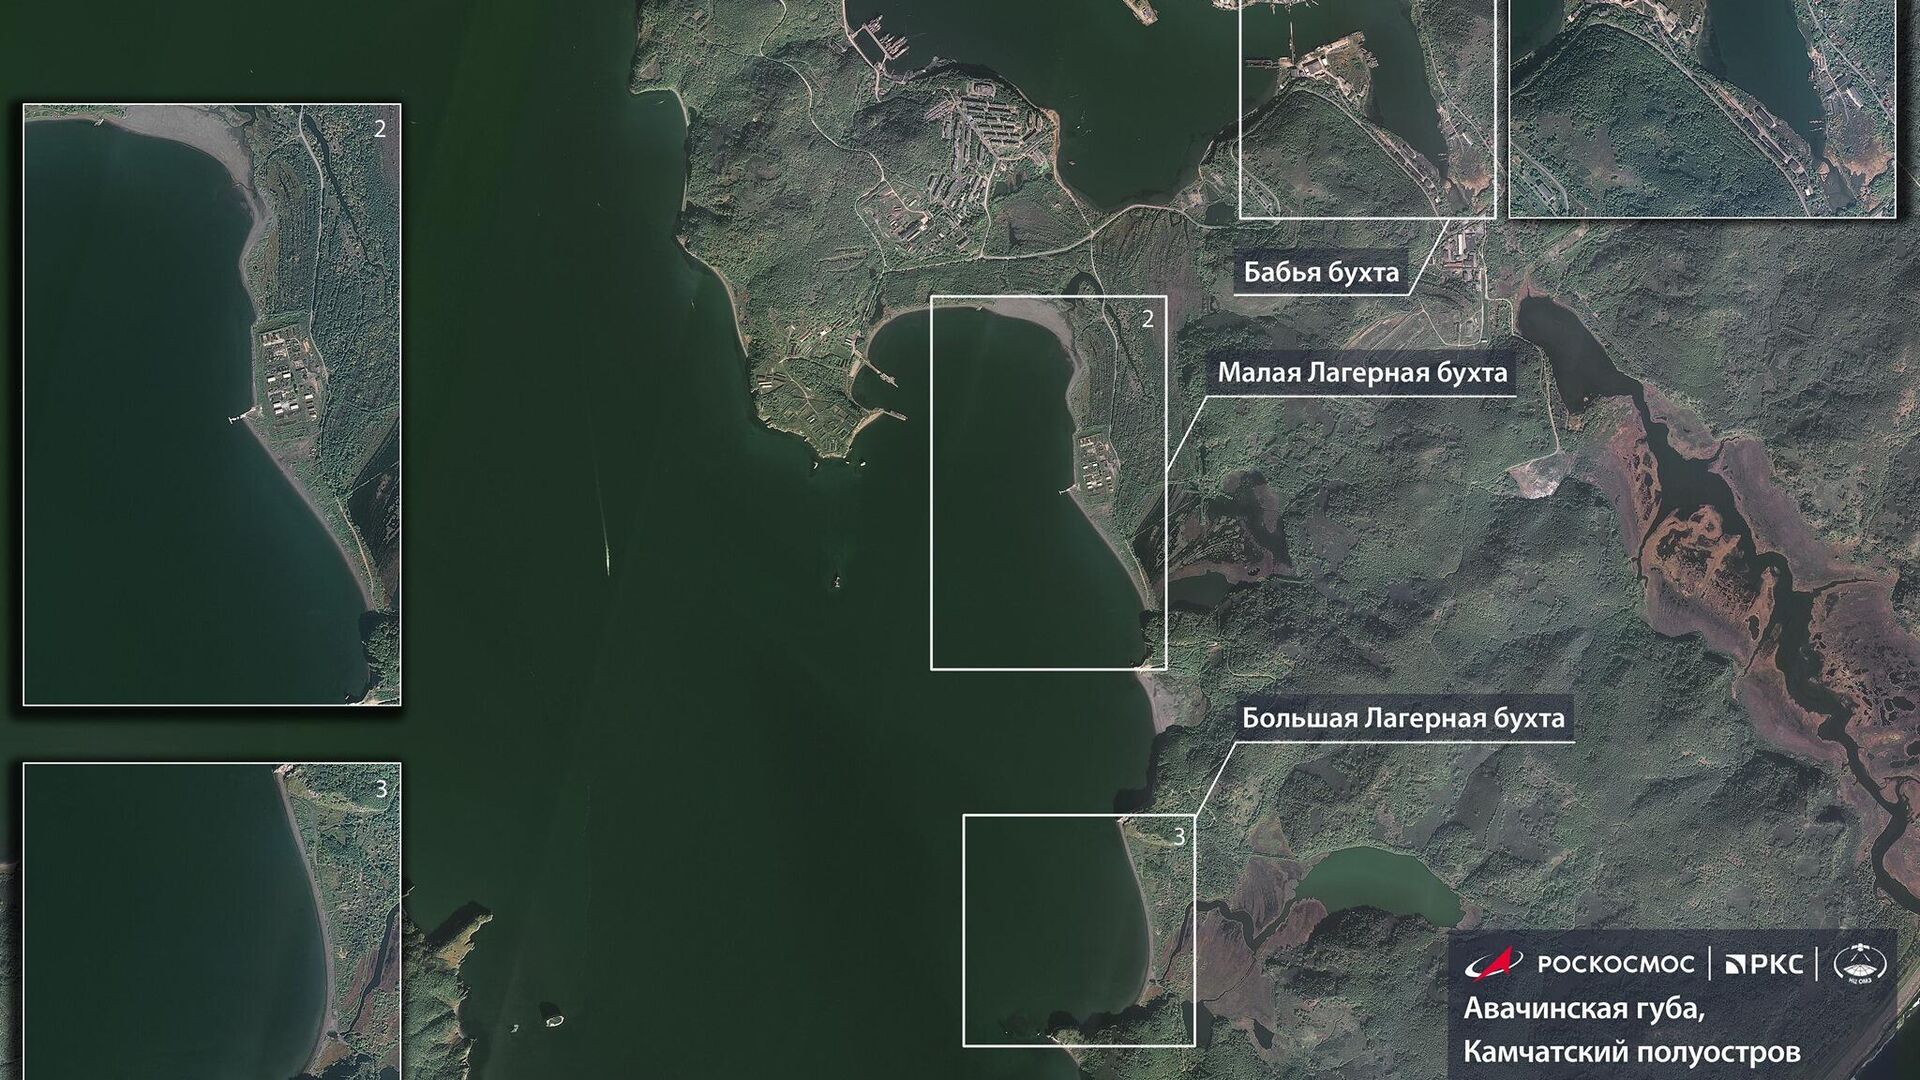 Роскосмос показал спутниковые снимки Камчатки, где произошло загрязнение побережья - РИА Новости, 1920, 10.10.2020